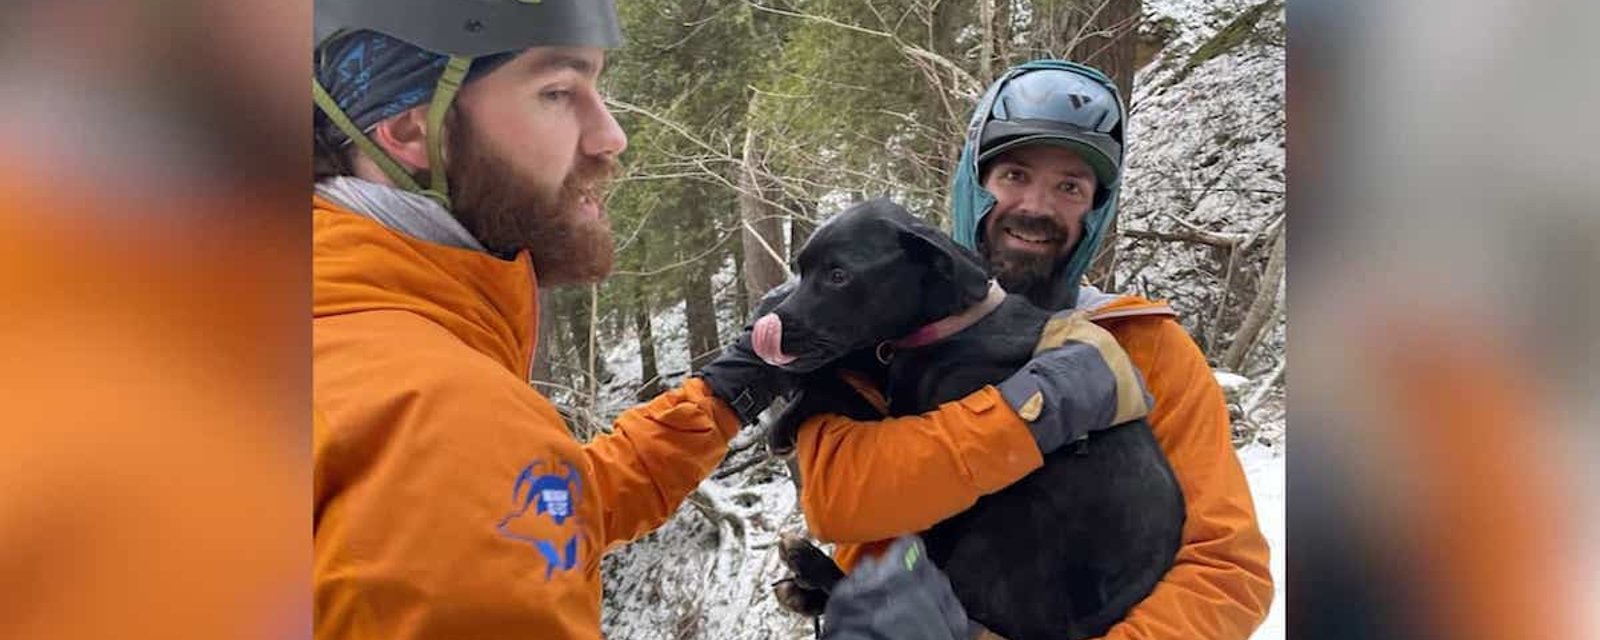 Ce chien a survécu à une chute de 20 mètres dans un parc national